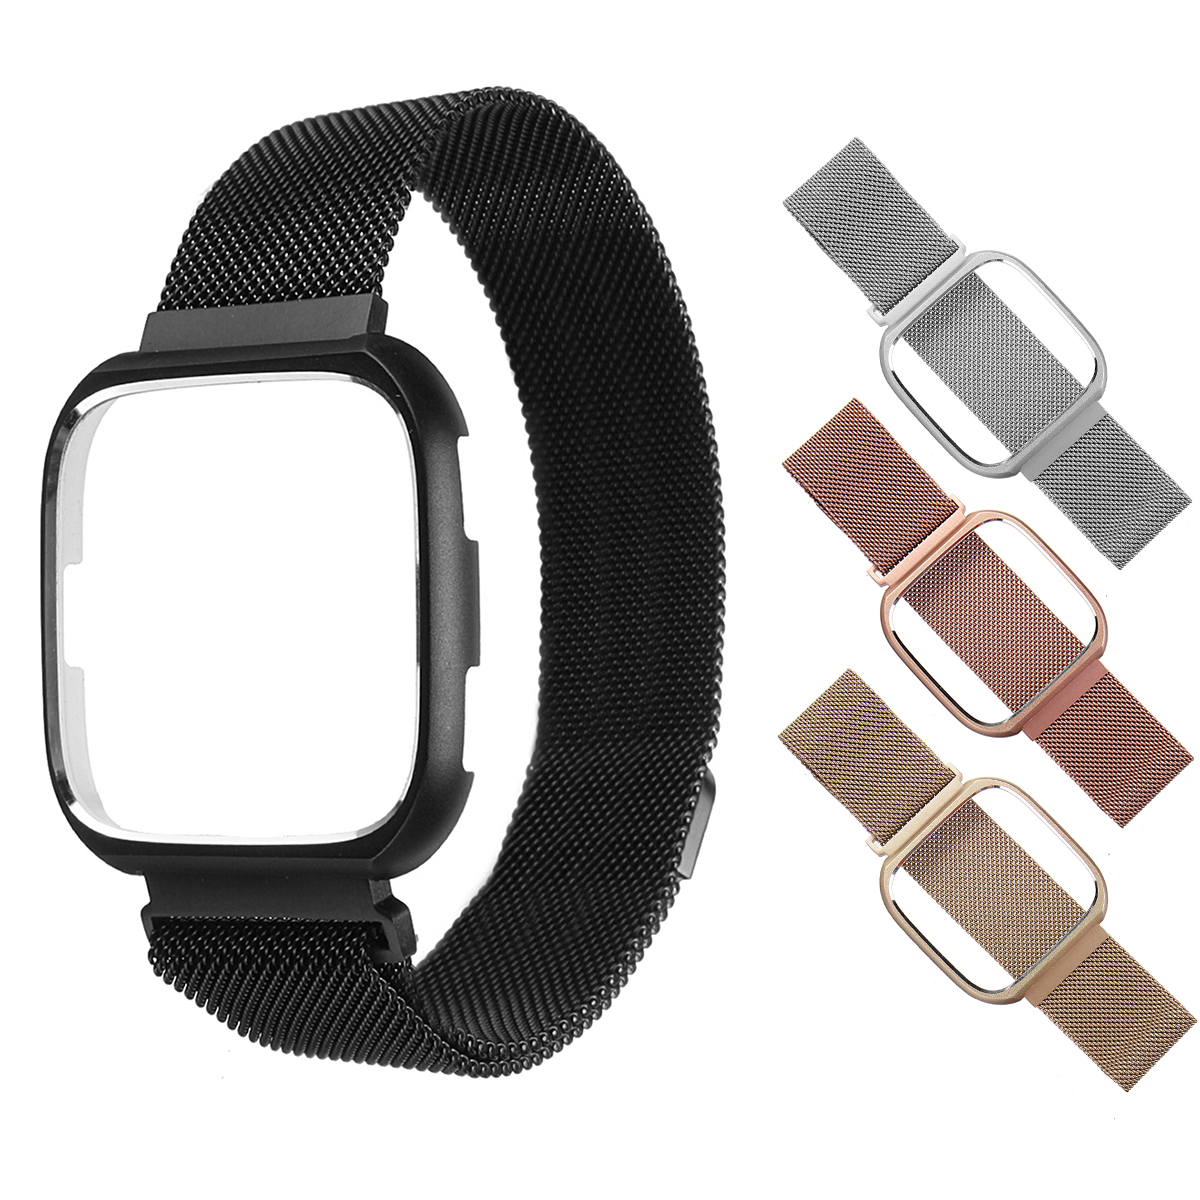 

Bakeey Большие и маленькие миланские часы из нержавеющей стали Стандарты и обложка Чехол для Fitbit Versa